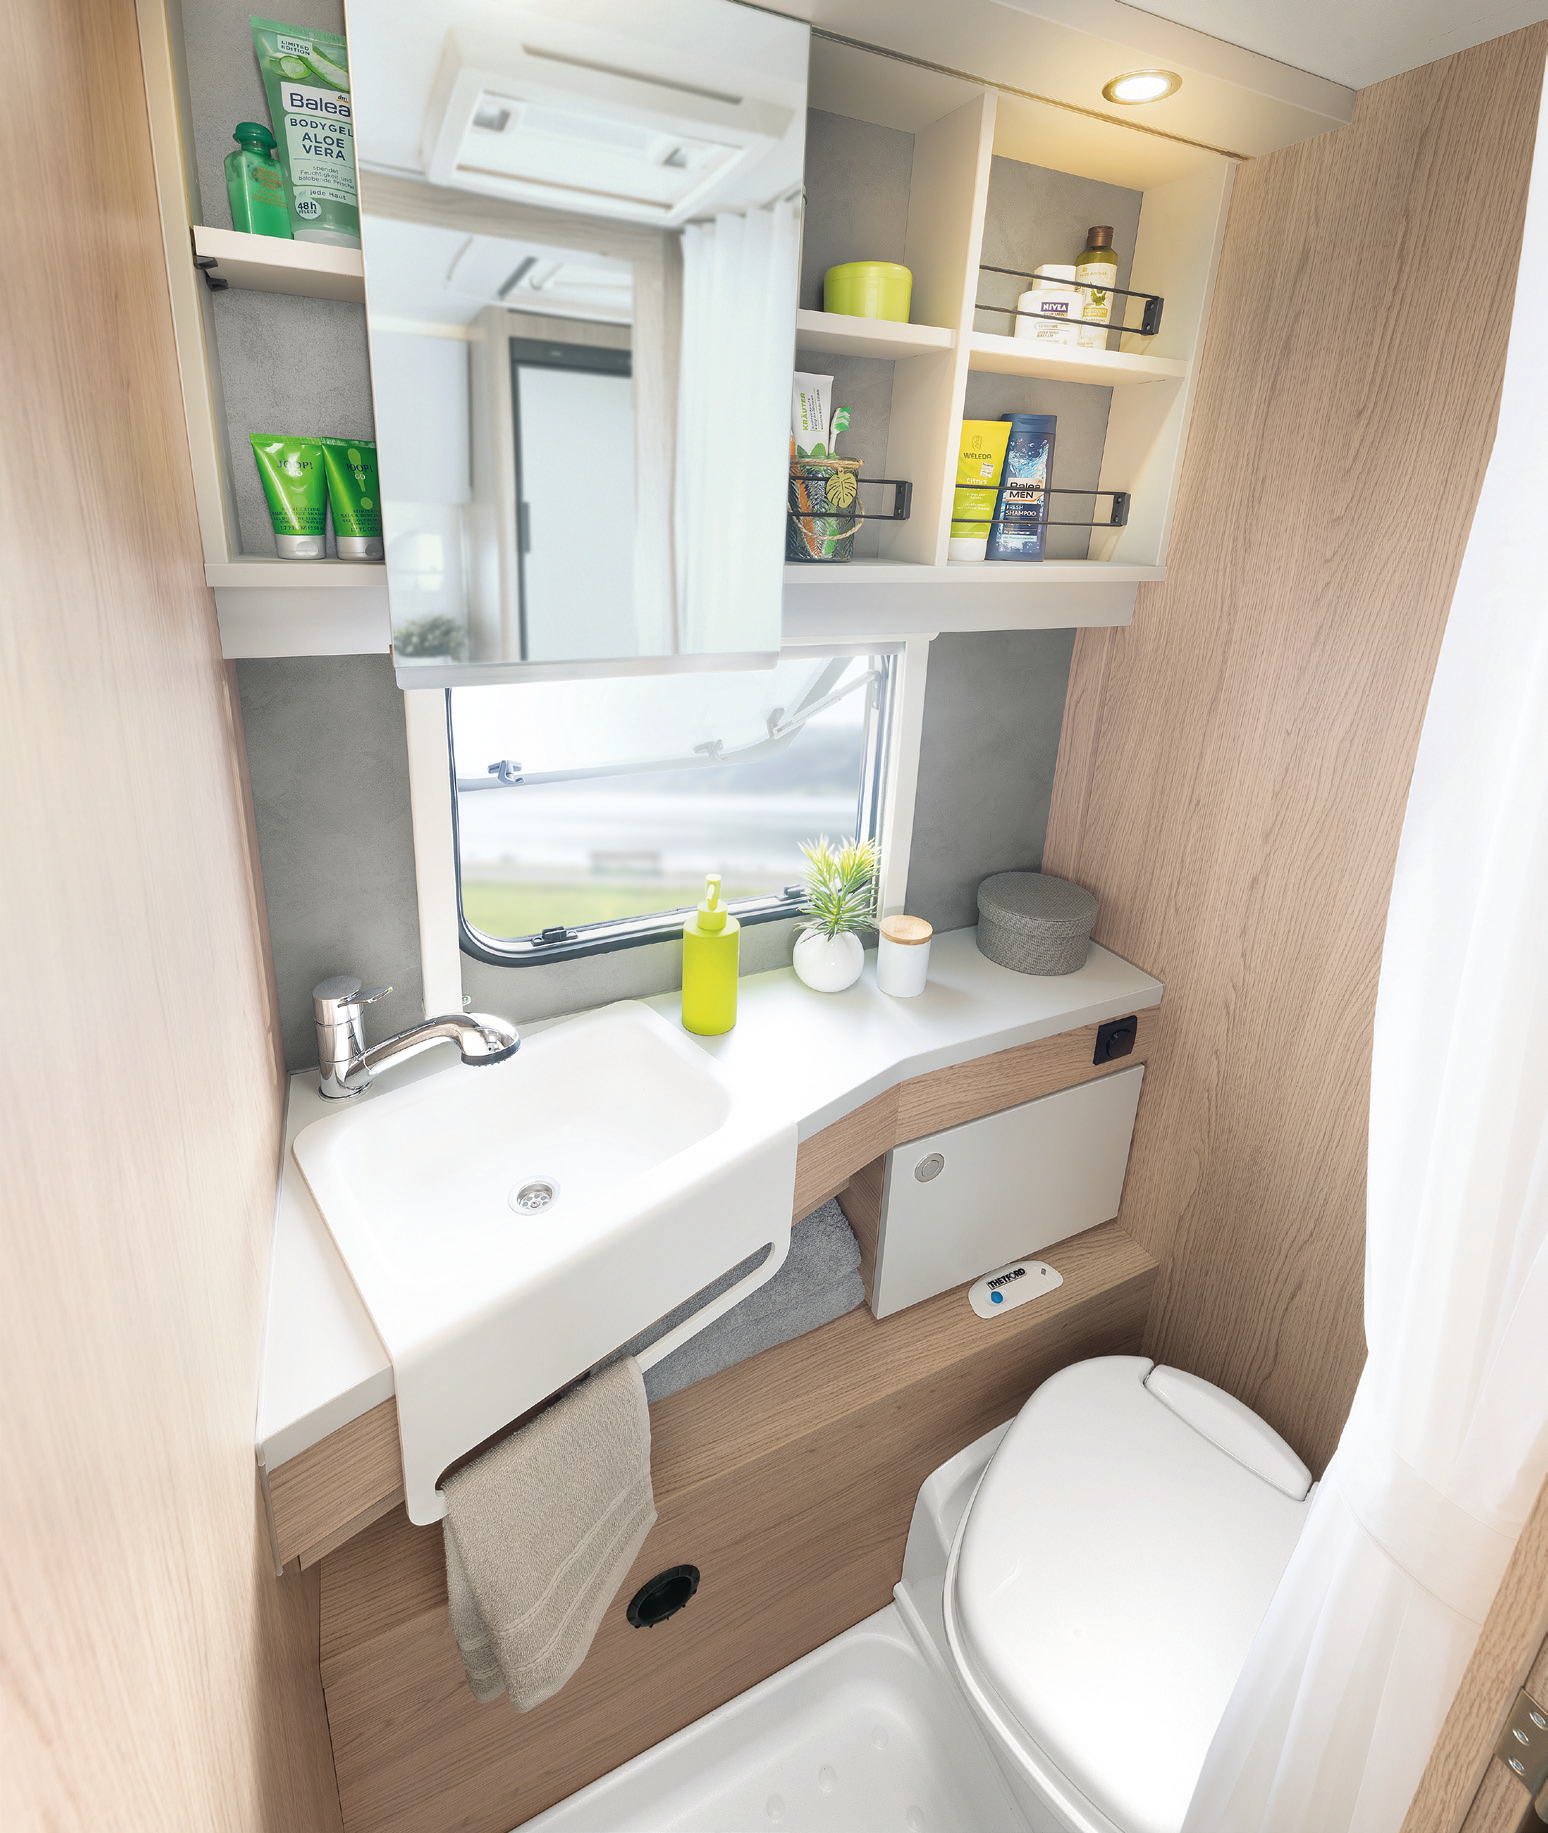 Kompaktowa łazienka w jasnych kolorach, z pięknymi, praktycznymi detalami, takimi jak zintegrowany wieszak na ręczniki • 510 ER | Skagen